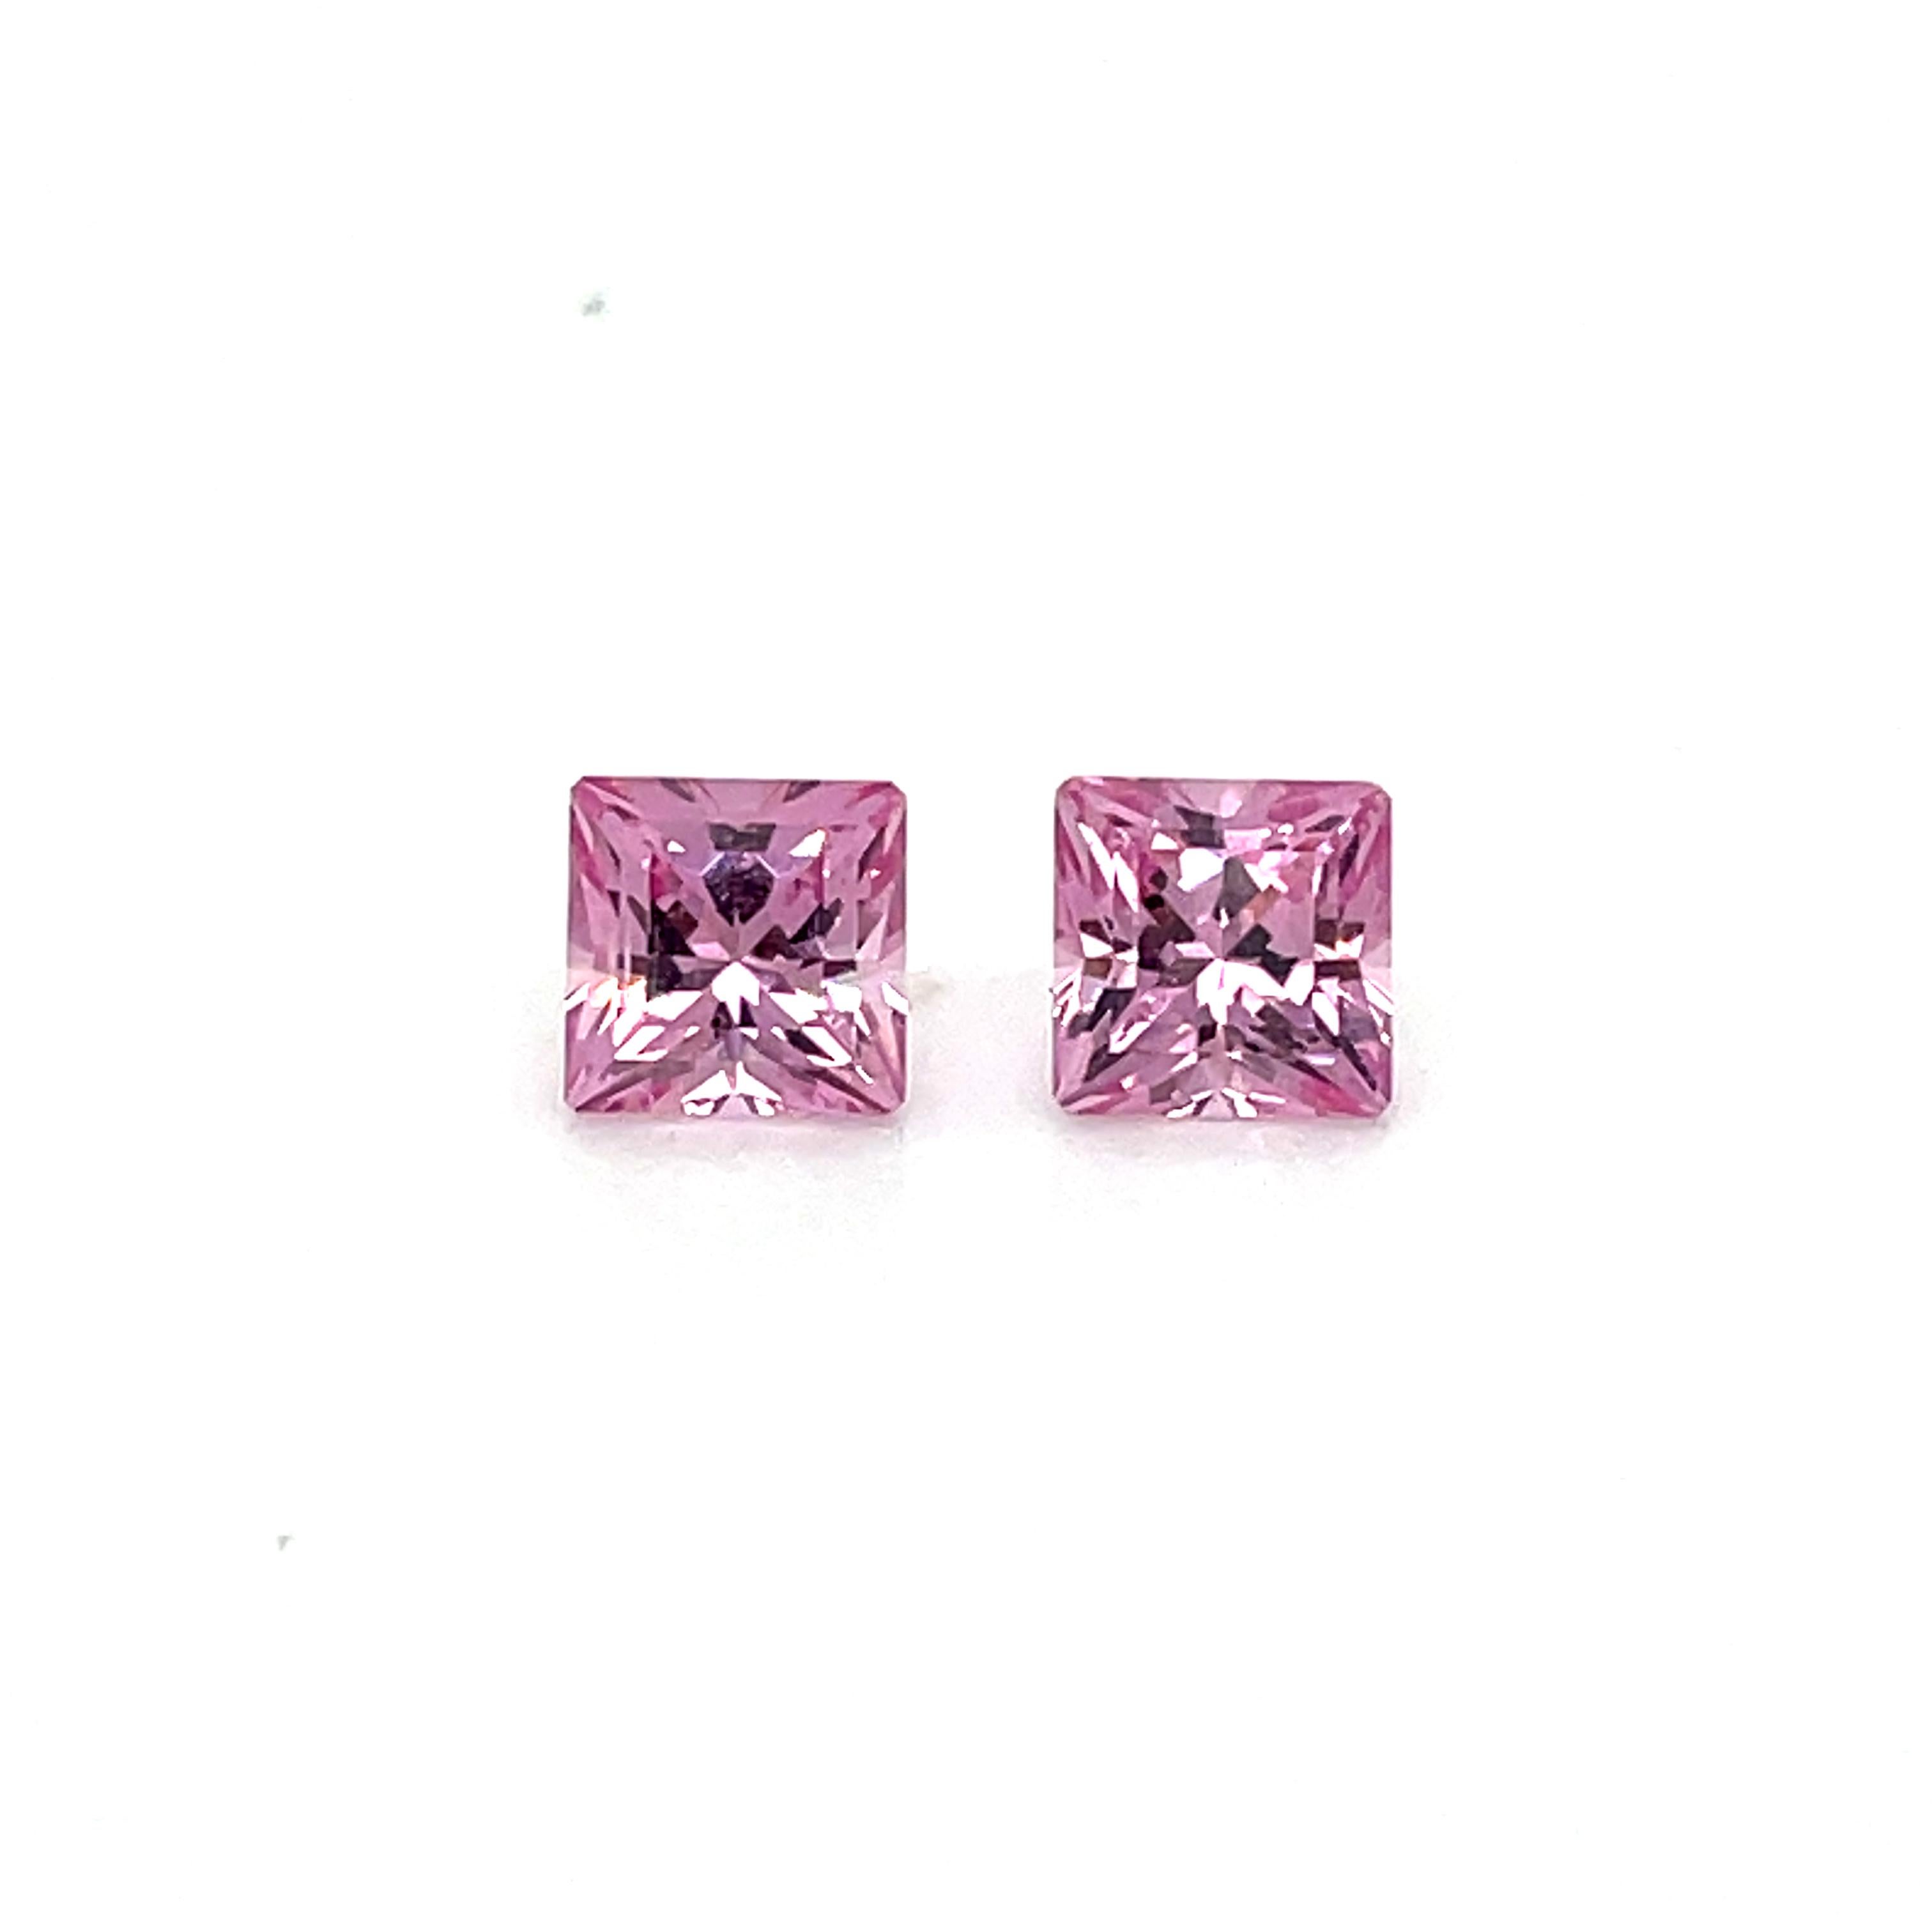 Lassen Sie sich von der unvergleichlichen Schönheit dieser exquisiten Edelsteine verzaubern. 

Mit einem Gesamtkaratgewicht von 2,18 sind diese rosafarbenen Spinelle im Prinzess-Schliff eine echte Rarität. 

Sie heben sich von der Masse ab durch